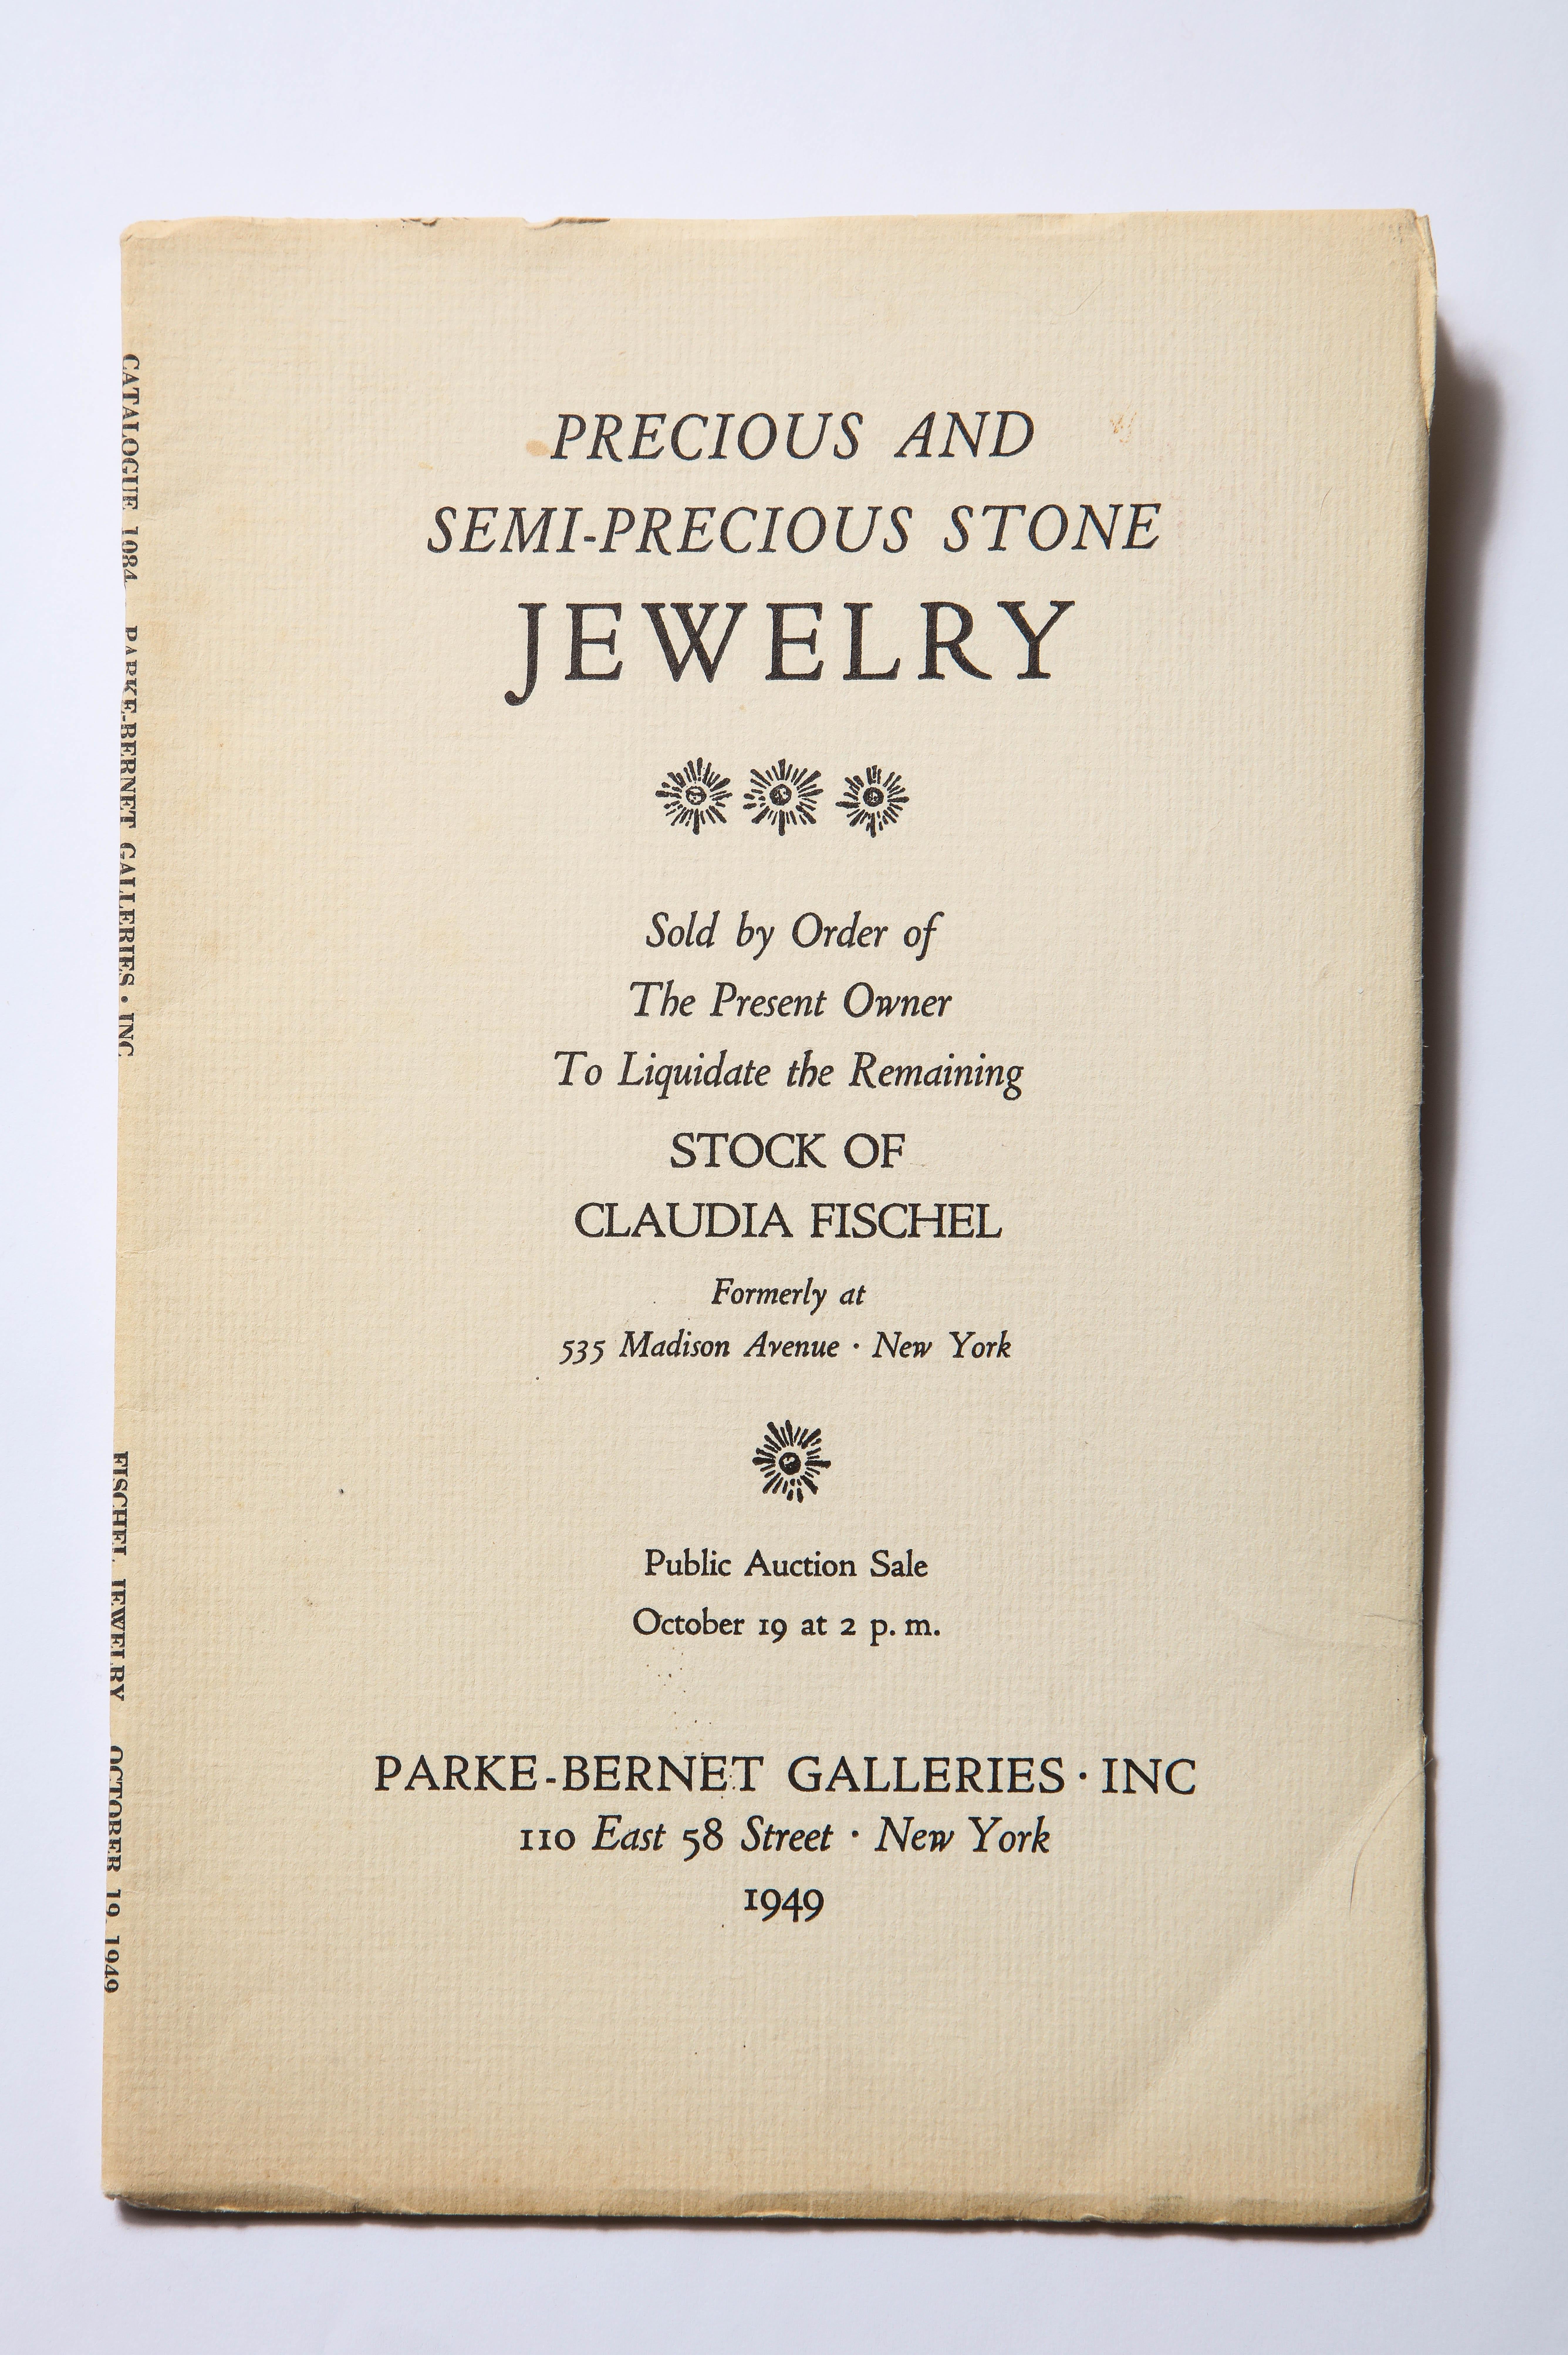 Collectors Vintage Sotheby Important Jewelry Auction Catalogs Cartier Art Deco For Sale 3